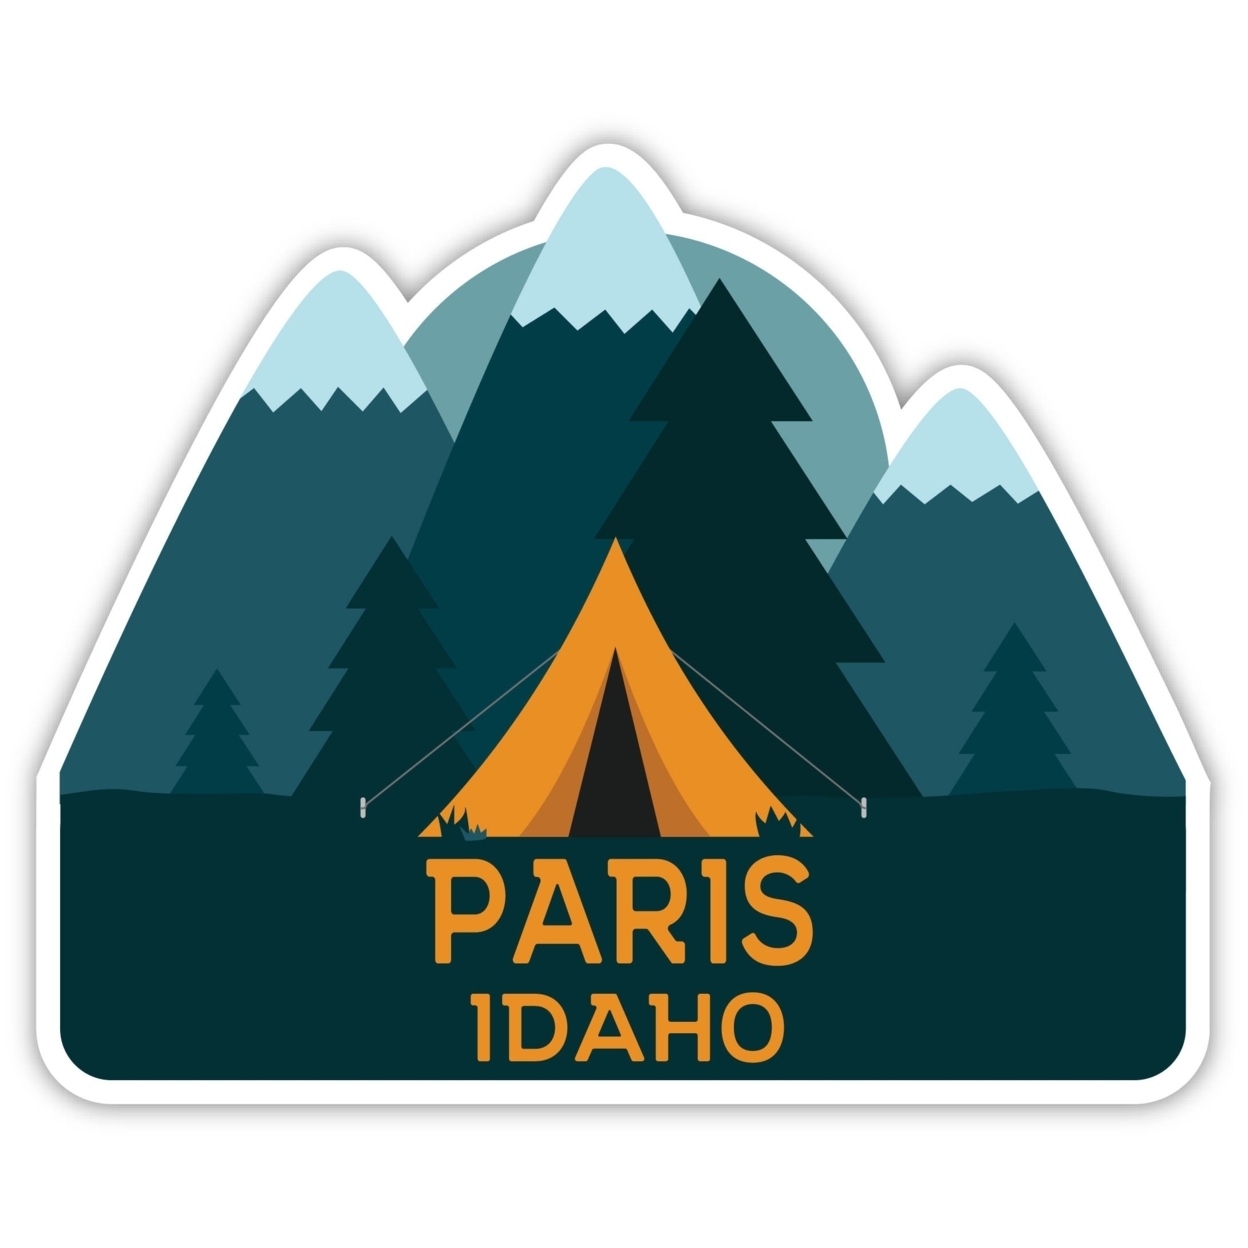 Paris Idaho Souvenir Decorative Stickers (Choose Theme And Size) - Single Unit, 4-Inch, Tent